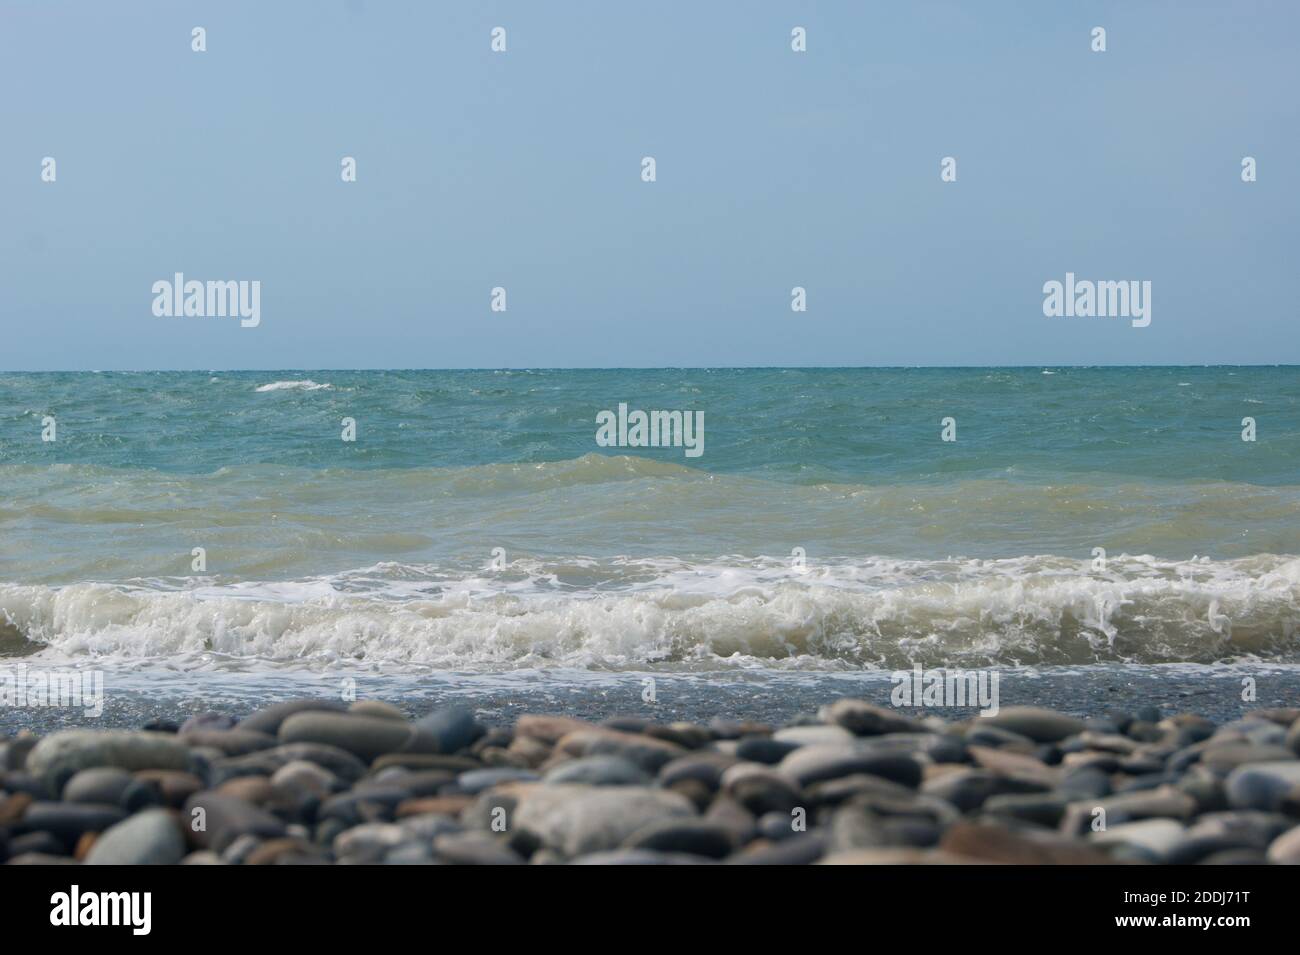 La mer vague de la mer Noire est une plage de galets. Horizon lisse, ciel bleu. Vacances vacances vacances vacances été bonheur apaisement Banque D'Images